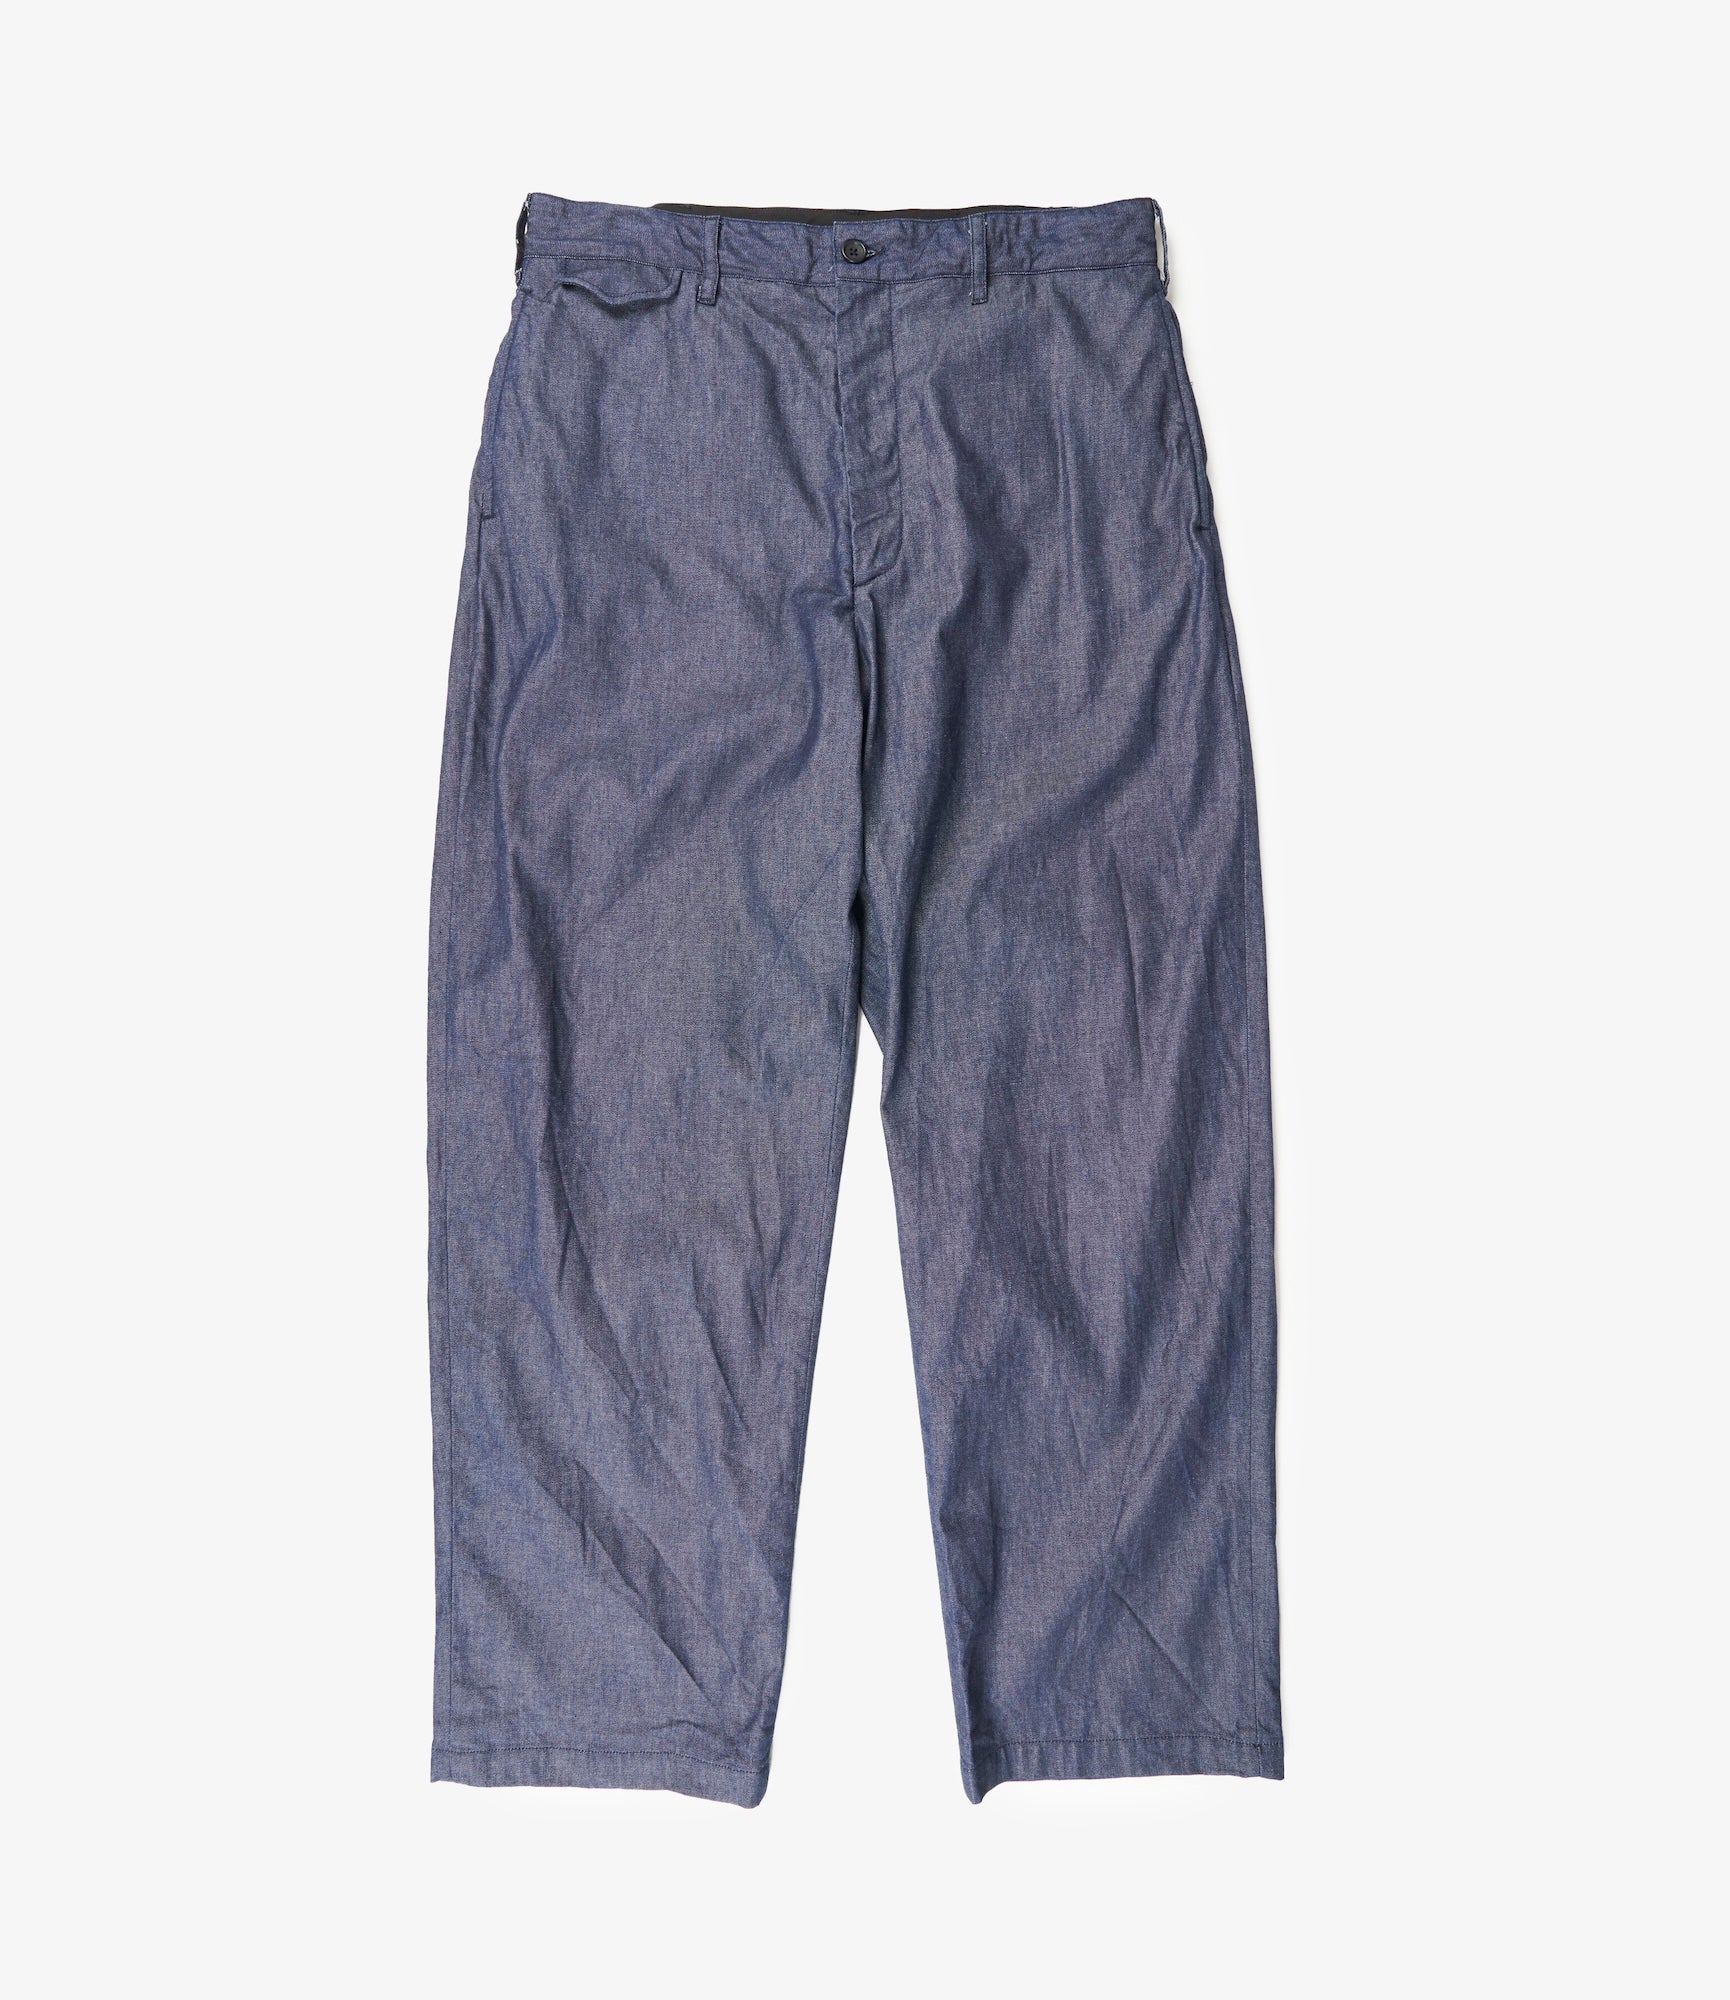 6,160円emgineered garments Sunset Pants 新作 1